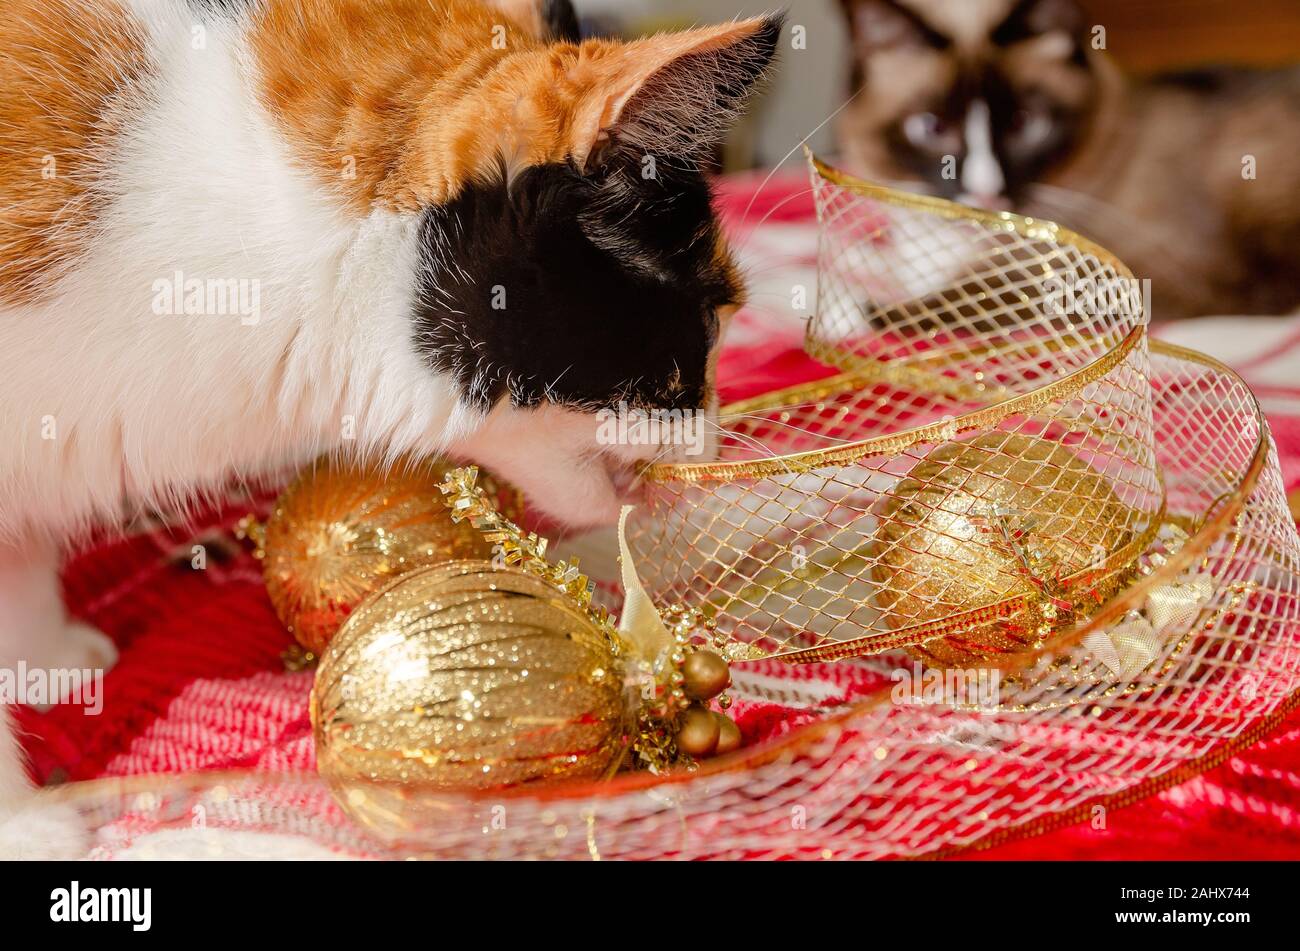 Zucca, un quattro-anno-vecchia gatta calico, mastica su oro Natale nastro come un gatto siamese gatto orologi, Dic 29, 2019, in Coden, Alabama. Foto Stock